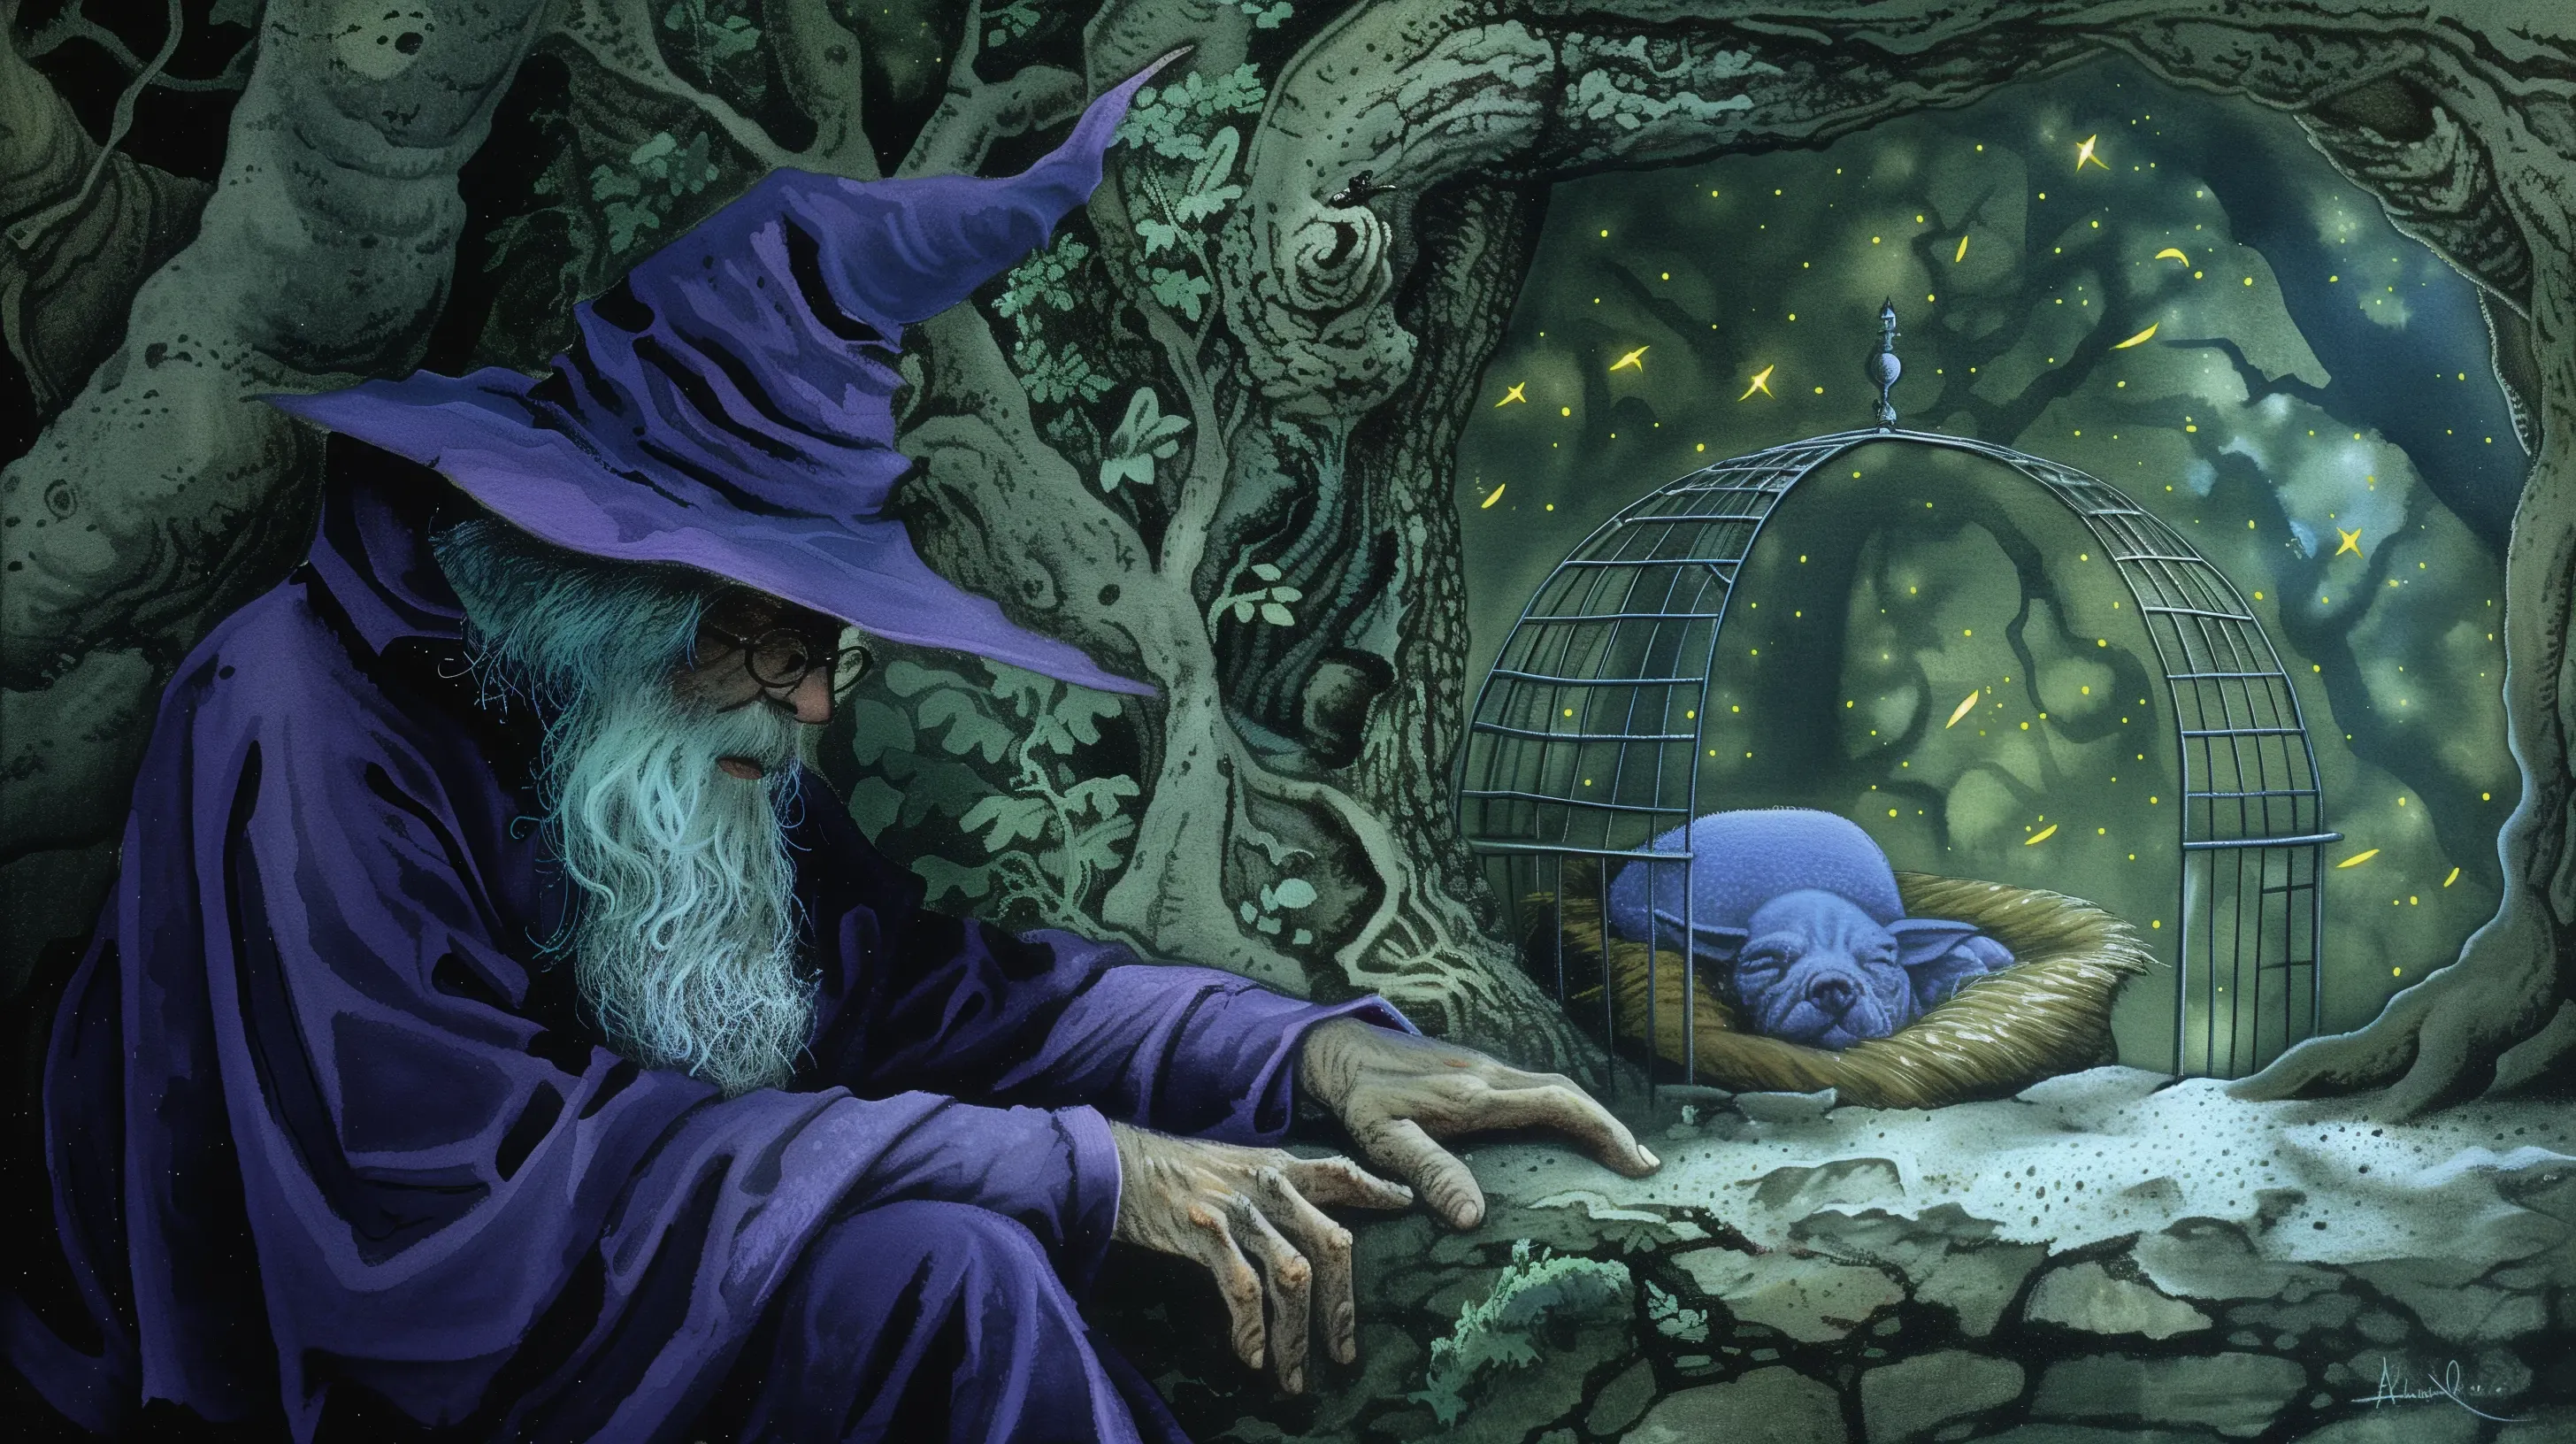 Evil Wizard with Purple Cloak